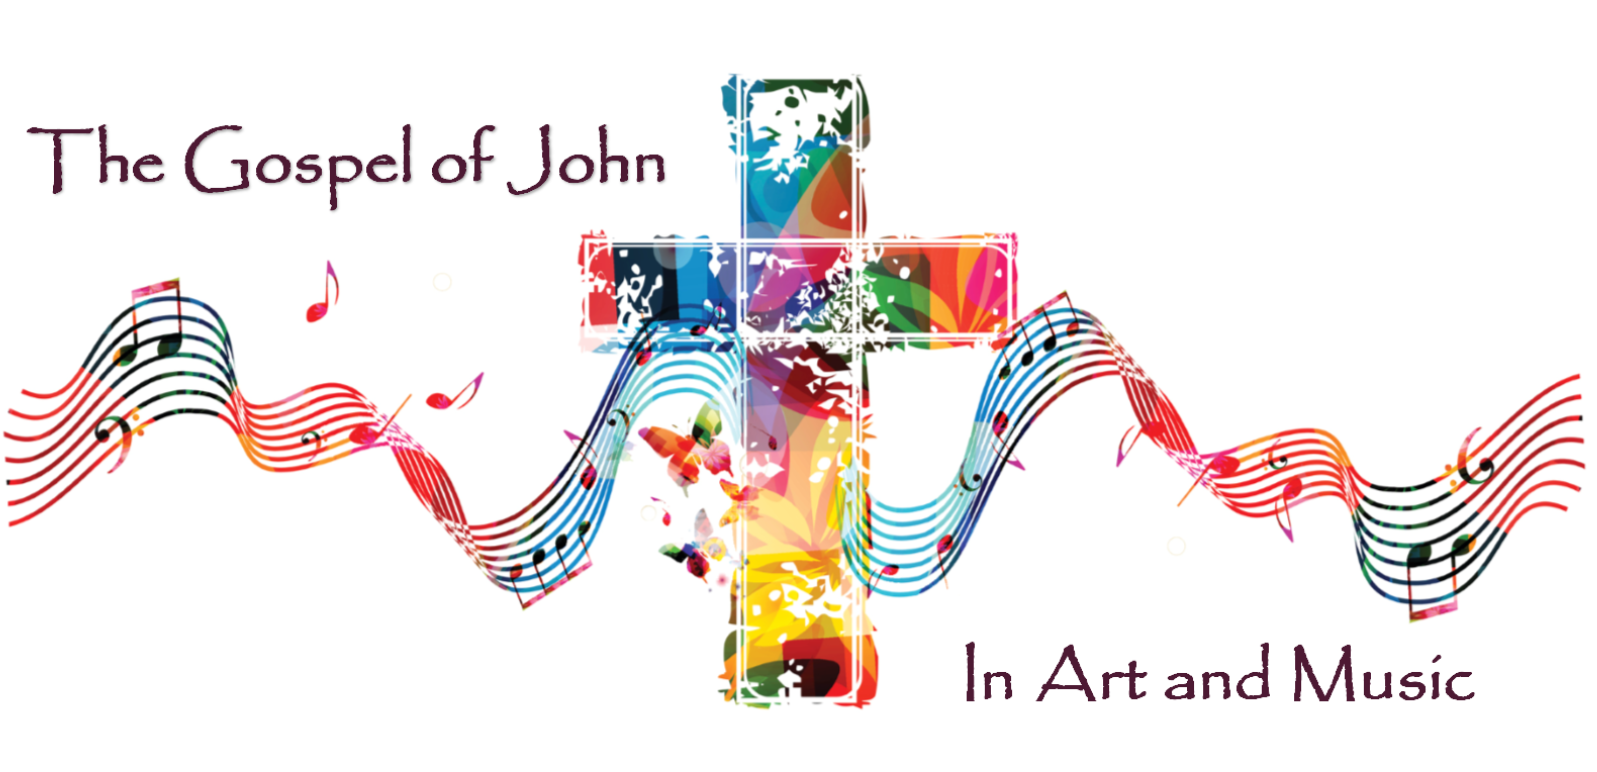 The Gospel of John in Art and Music